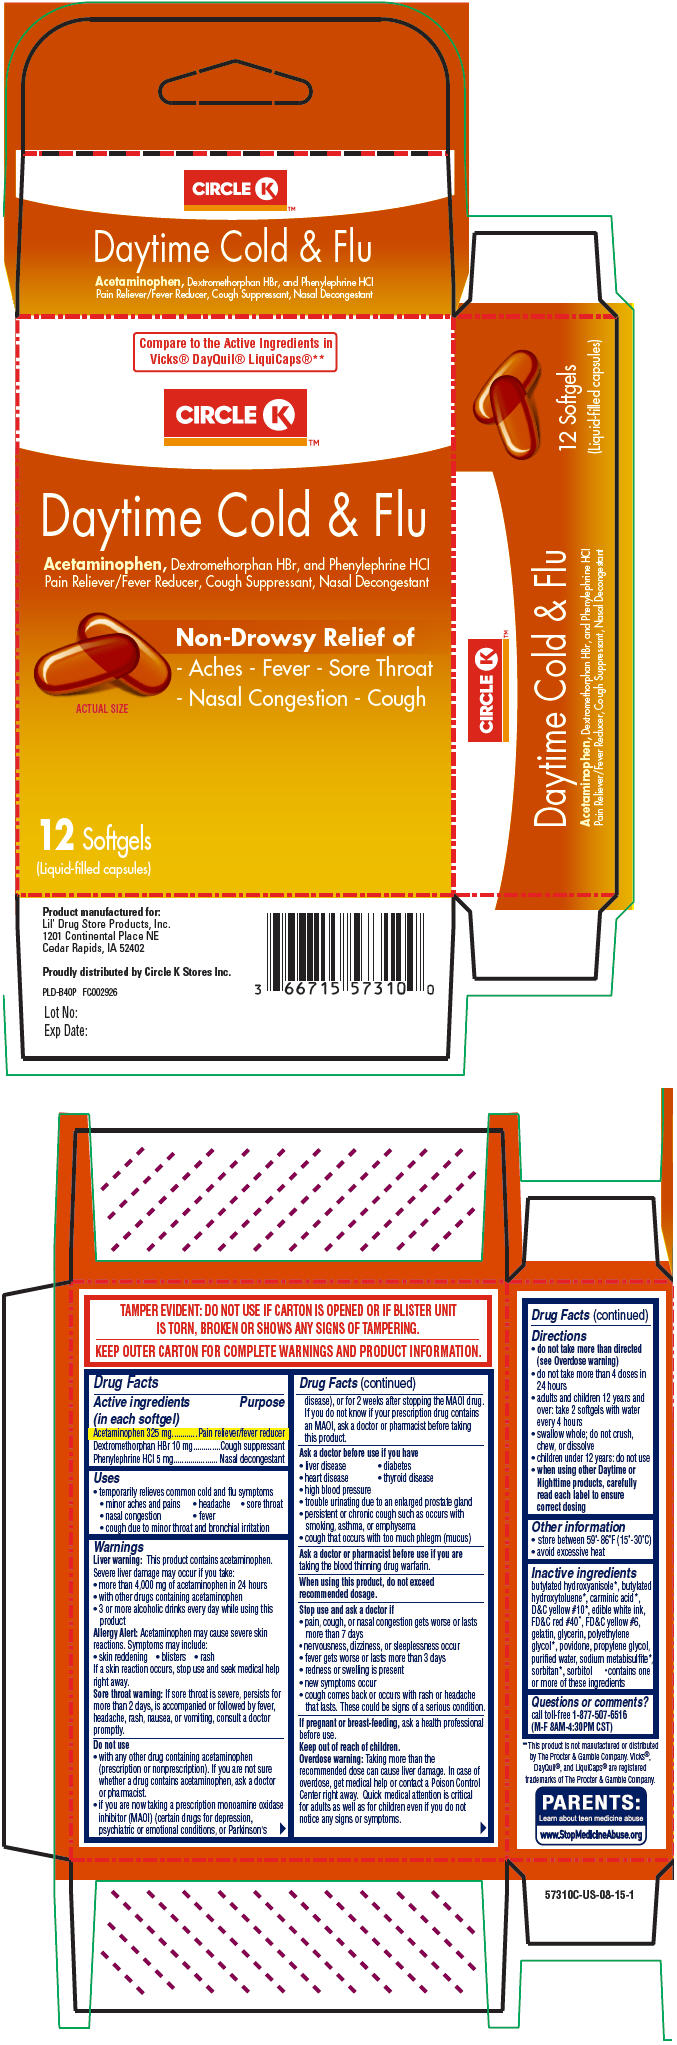 Principal Display Panel - 12 Capsule Blister Pack Carton - 5631